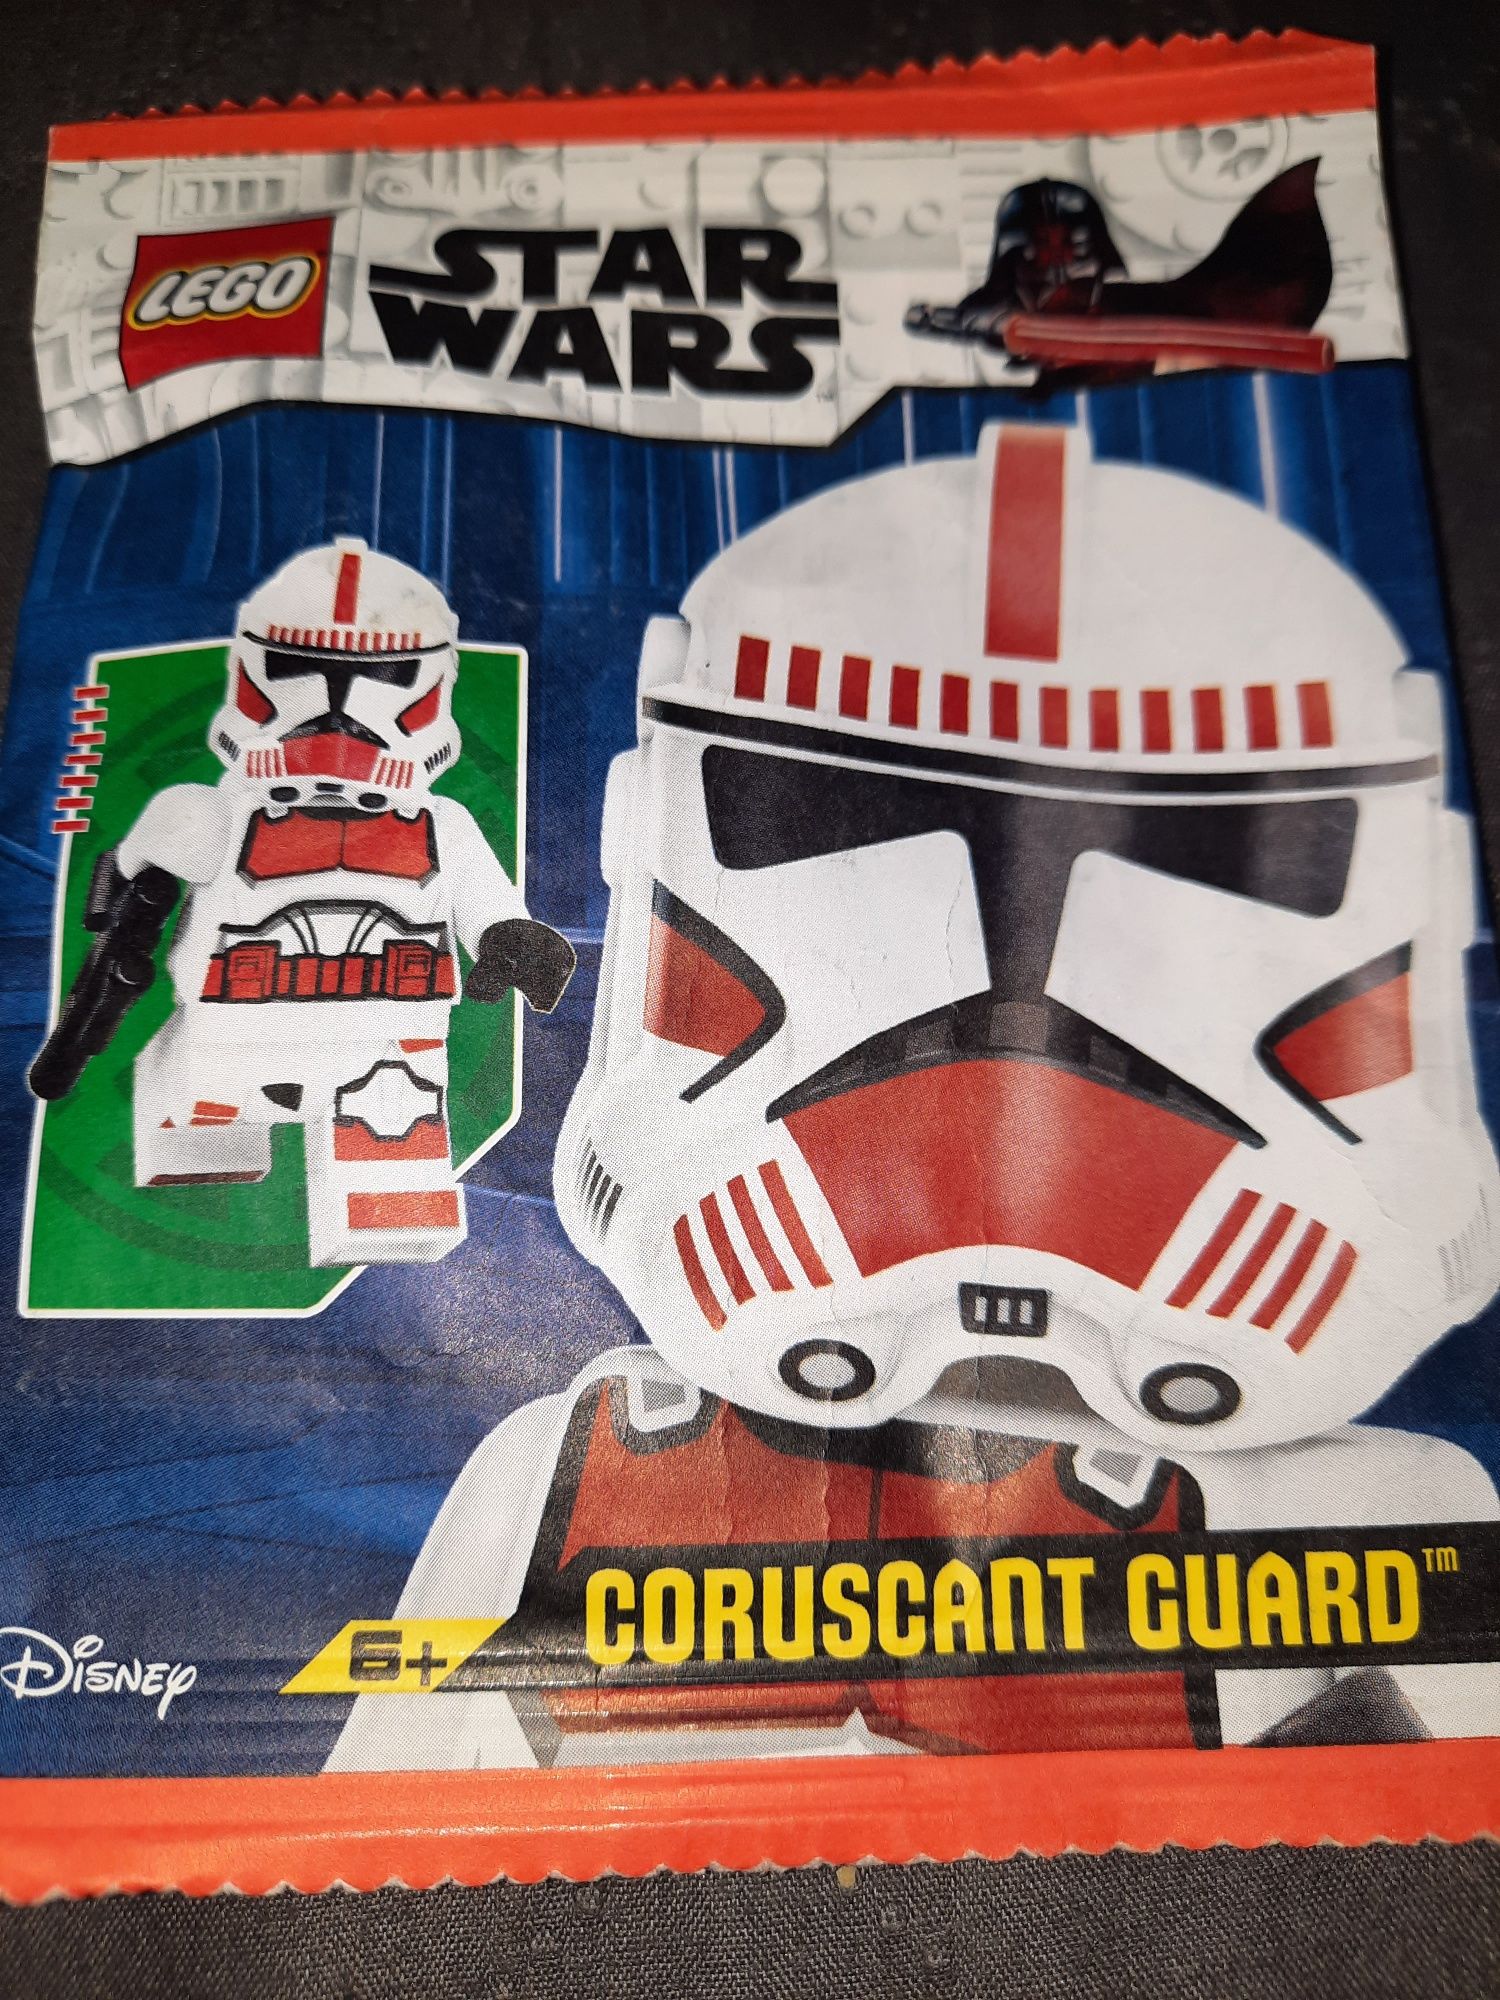 Lego Star Wars saszetka z figurką Coruscant Guard